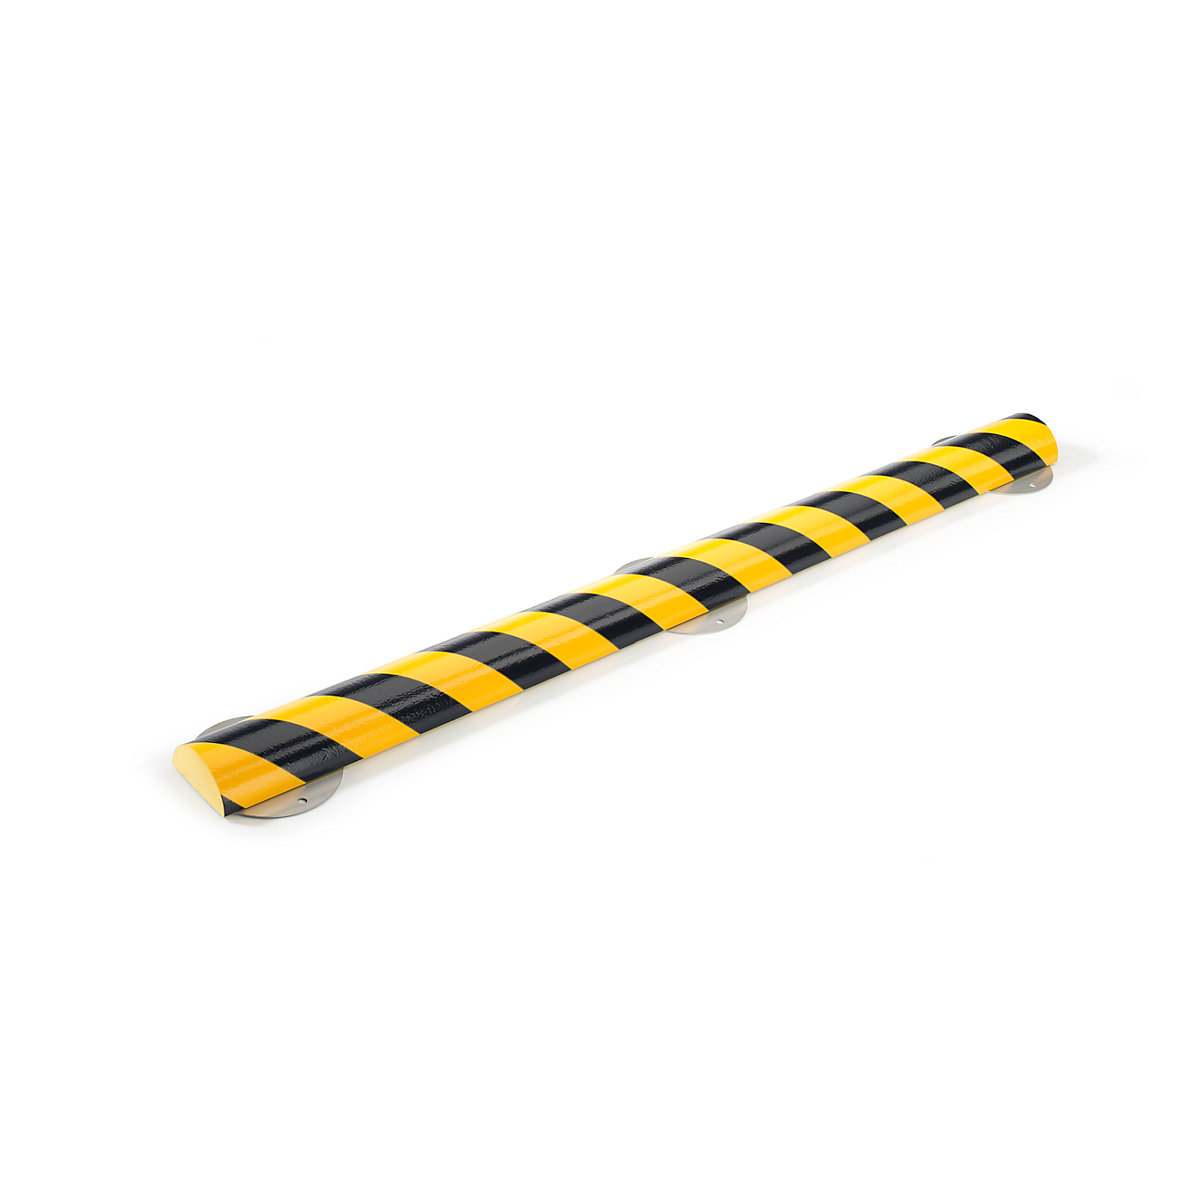 Protecție pentru suprafețe Knuffi® cu șină de montaj – SHG, tip C+, bucată de 1 m, negru / galben